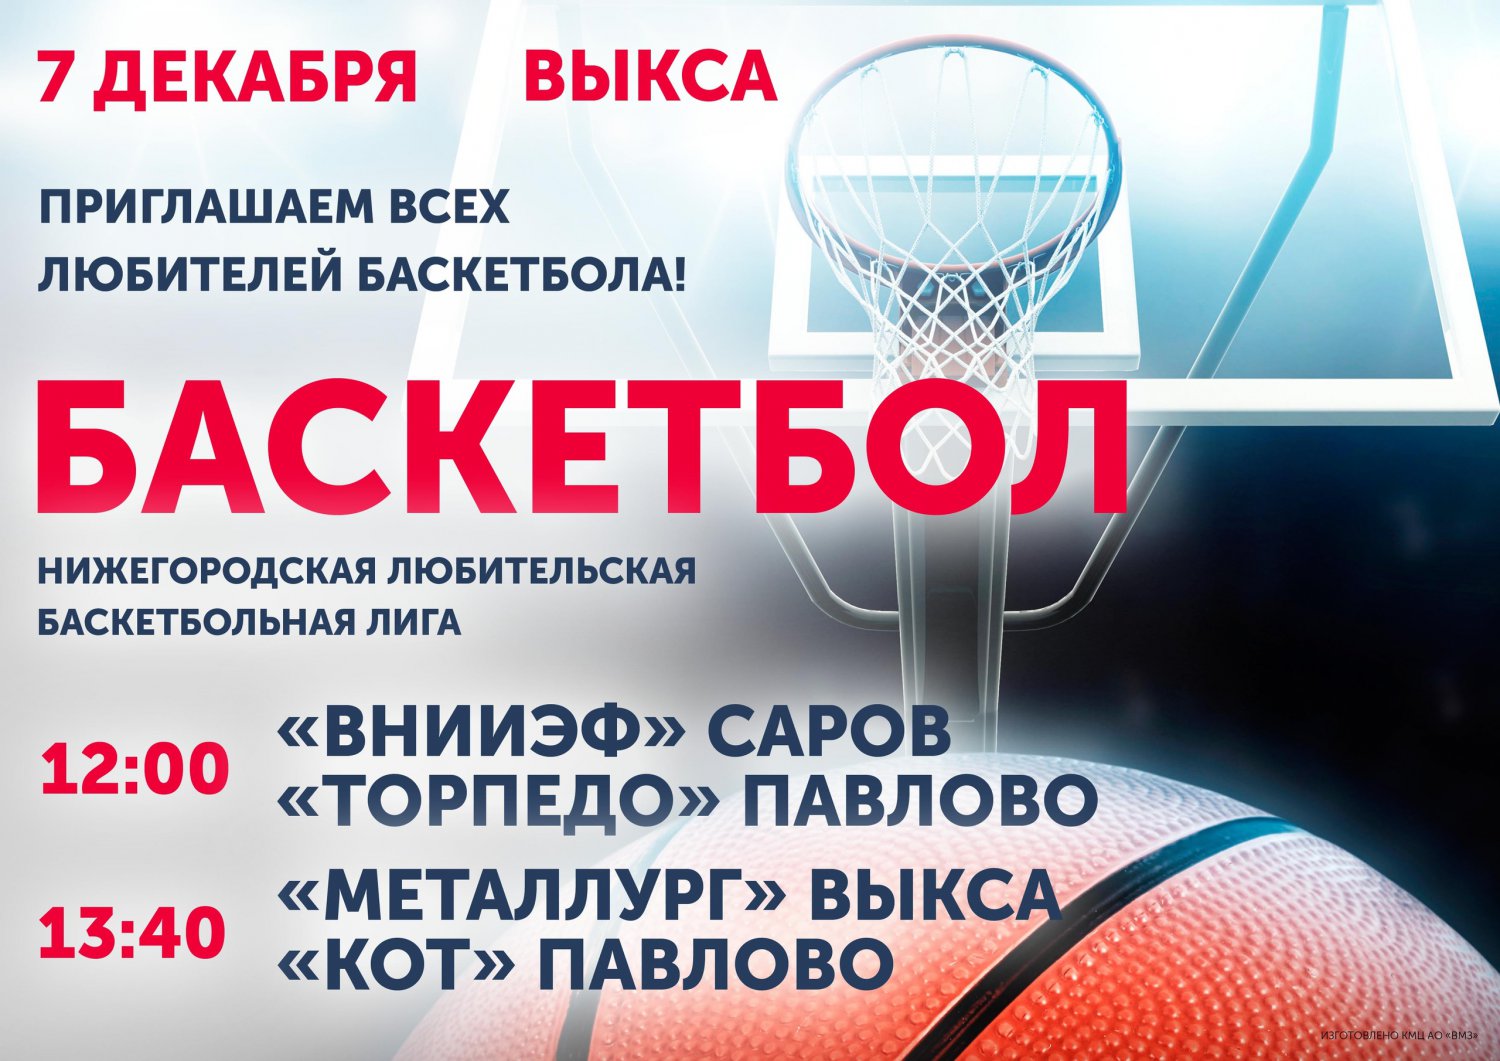 Баскетбол: «Металлург» Выкса — «КОТ» Павлово